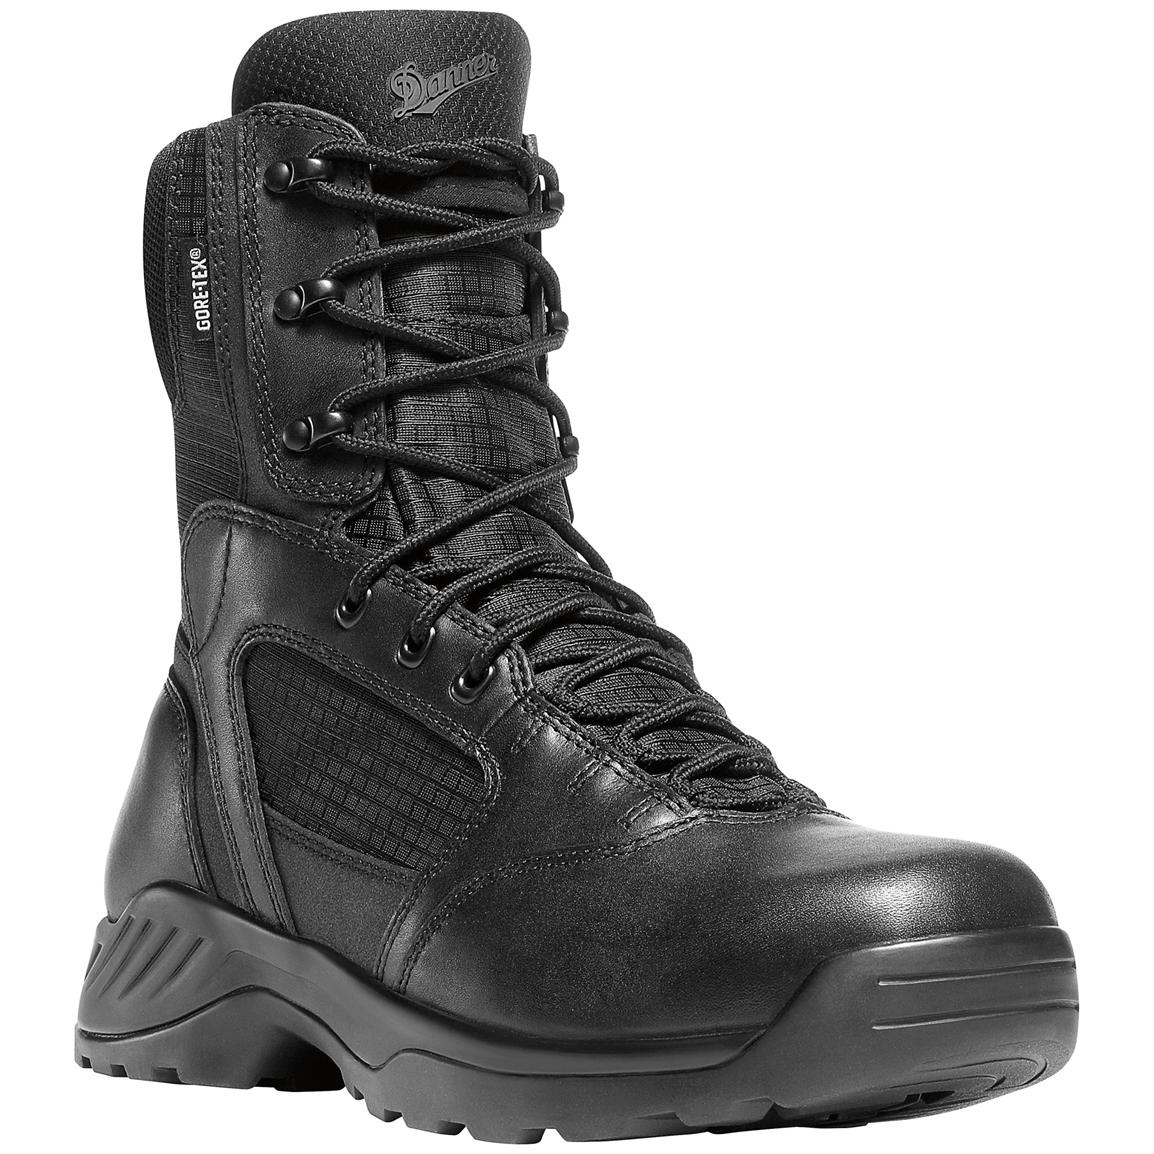 Men's 8 inch Danner® Kinetic Side-zip GTX® Uniform Boots, Black